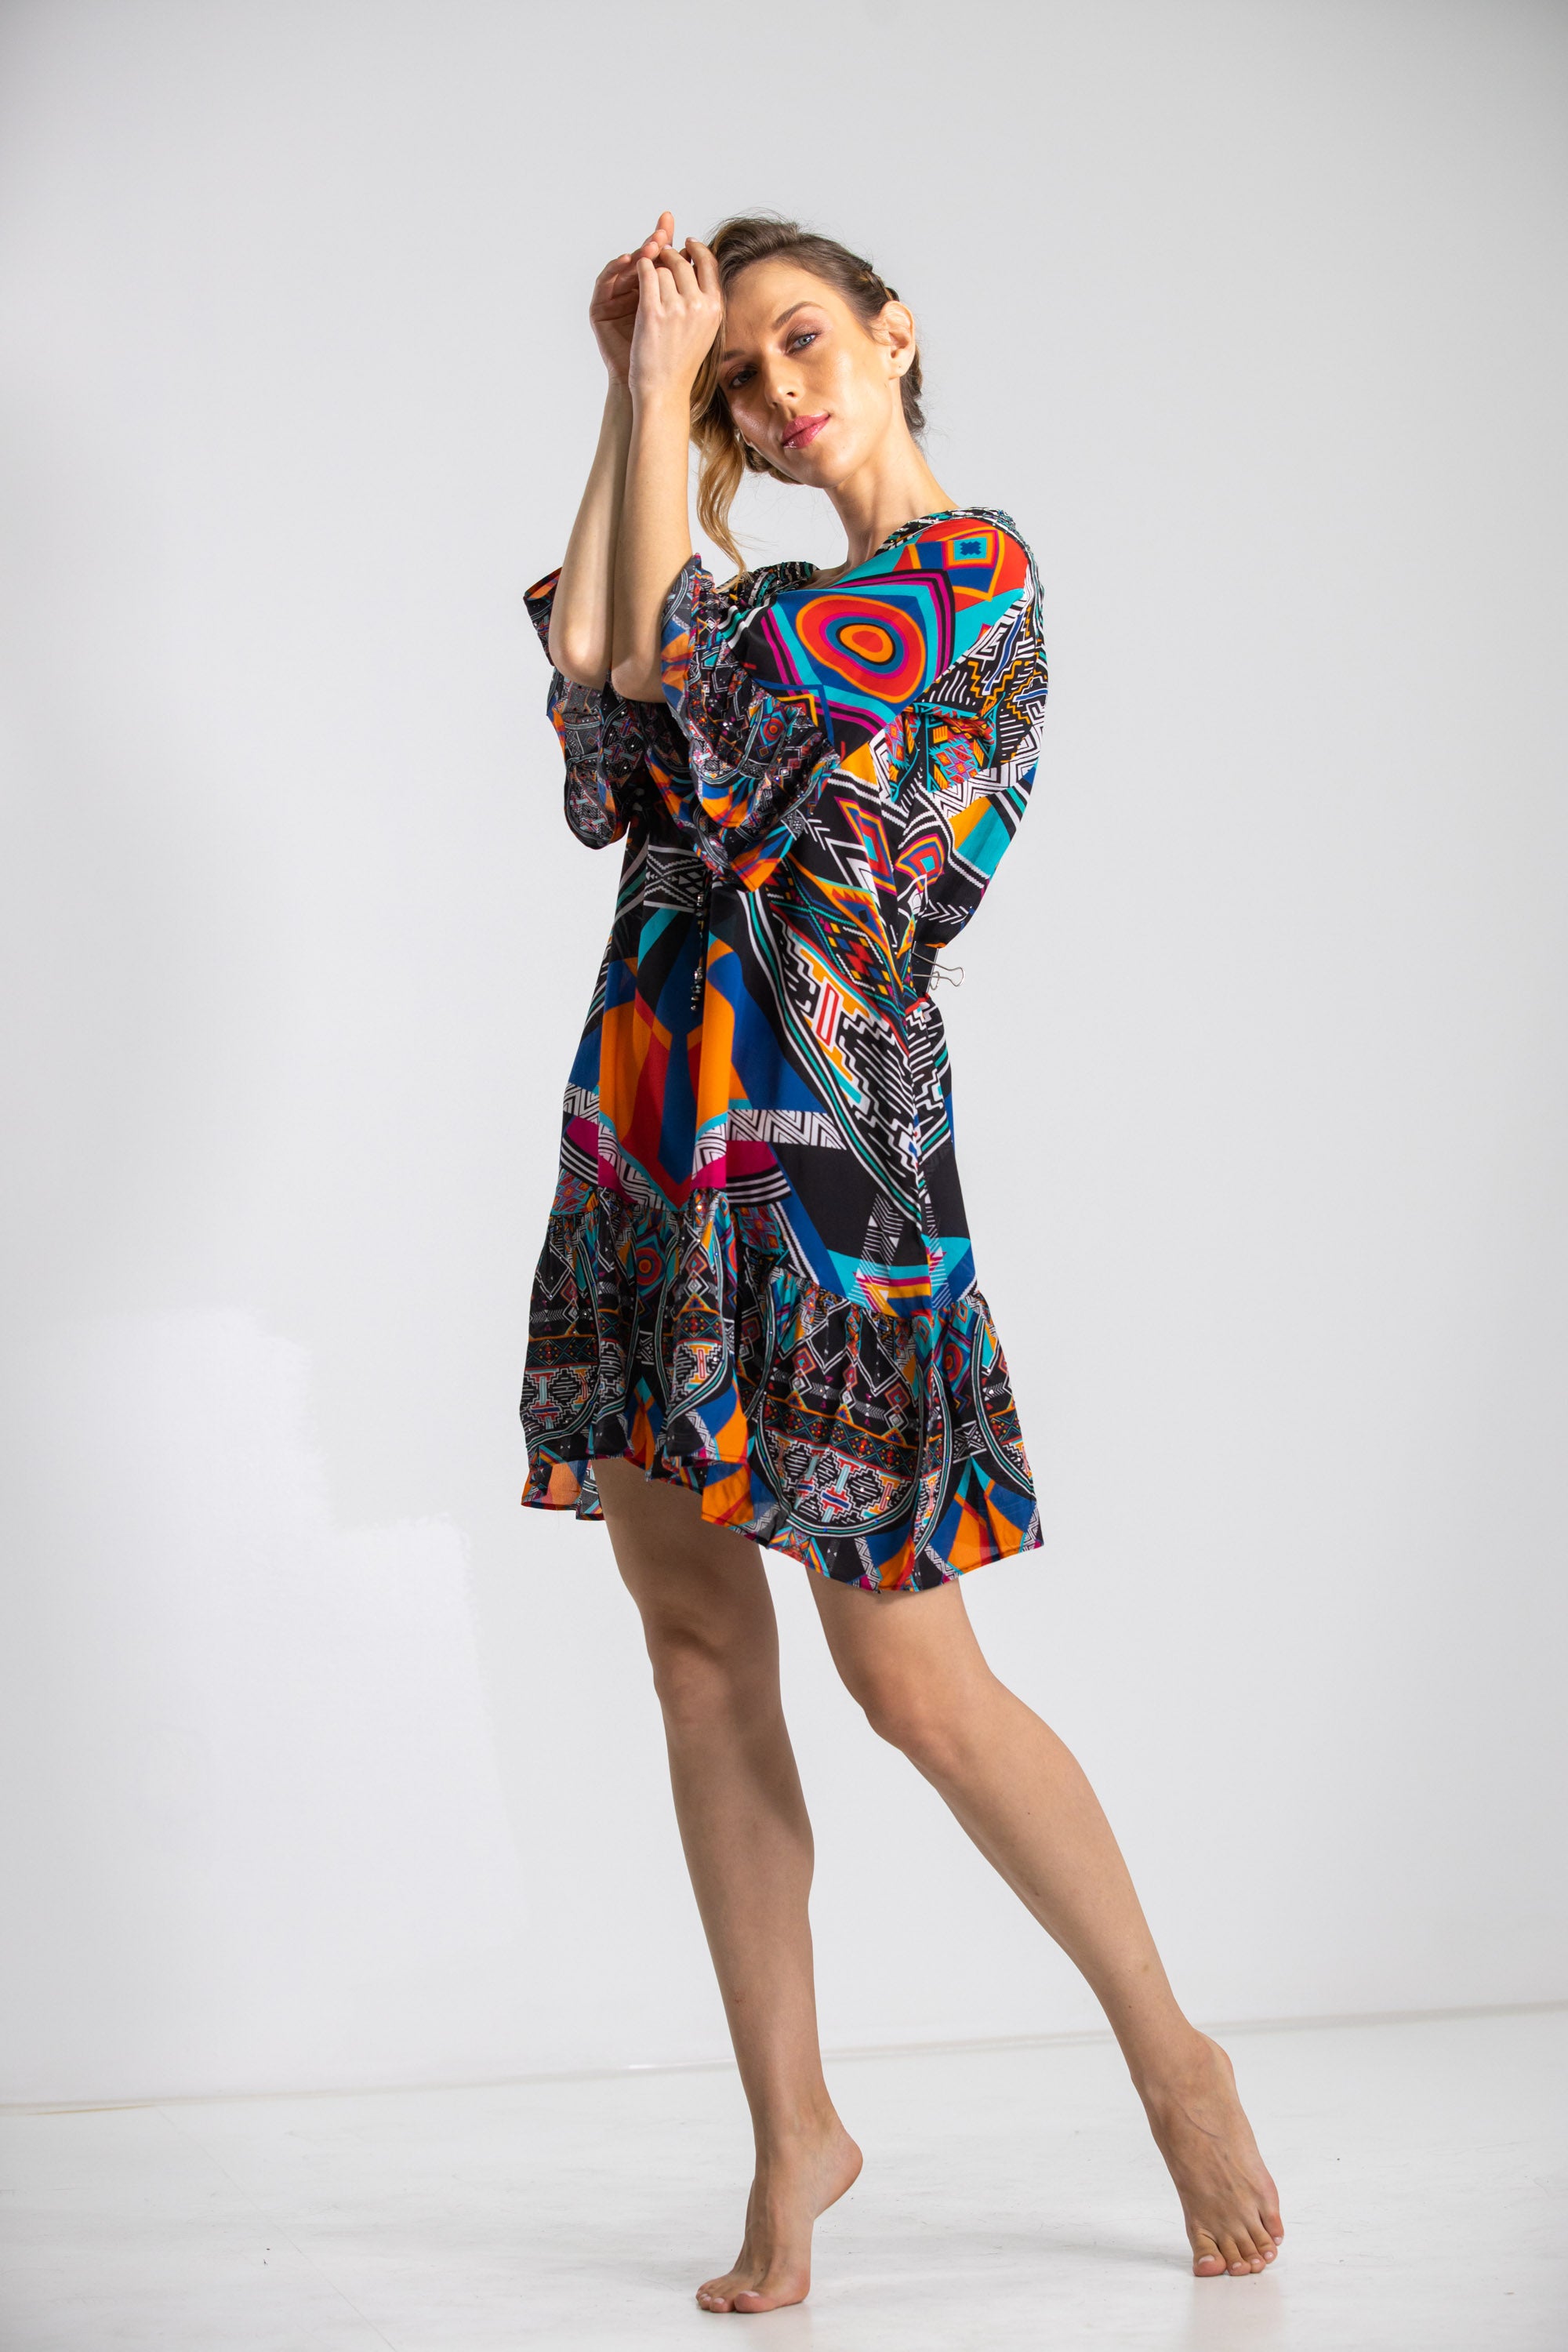 HIMBA AFRICANA - GYPSY DRESS